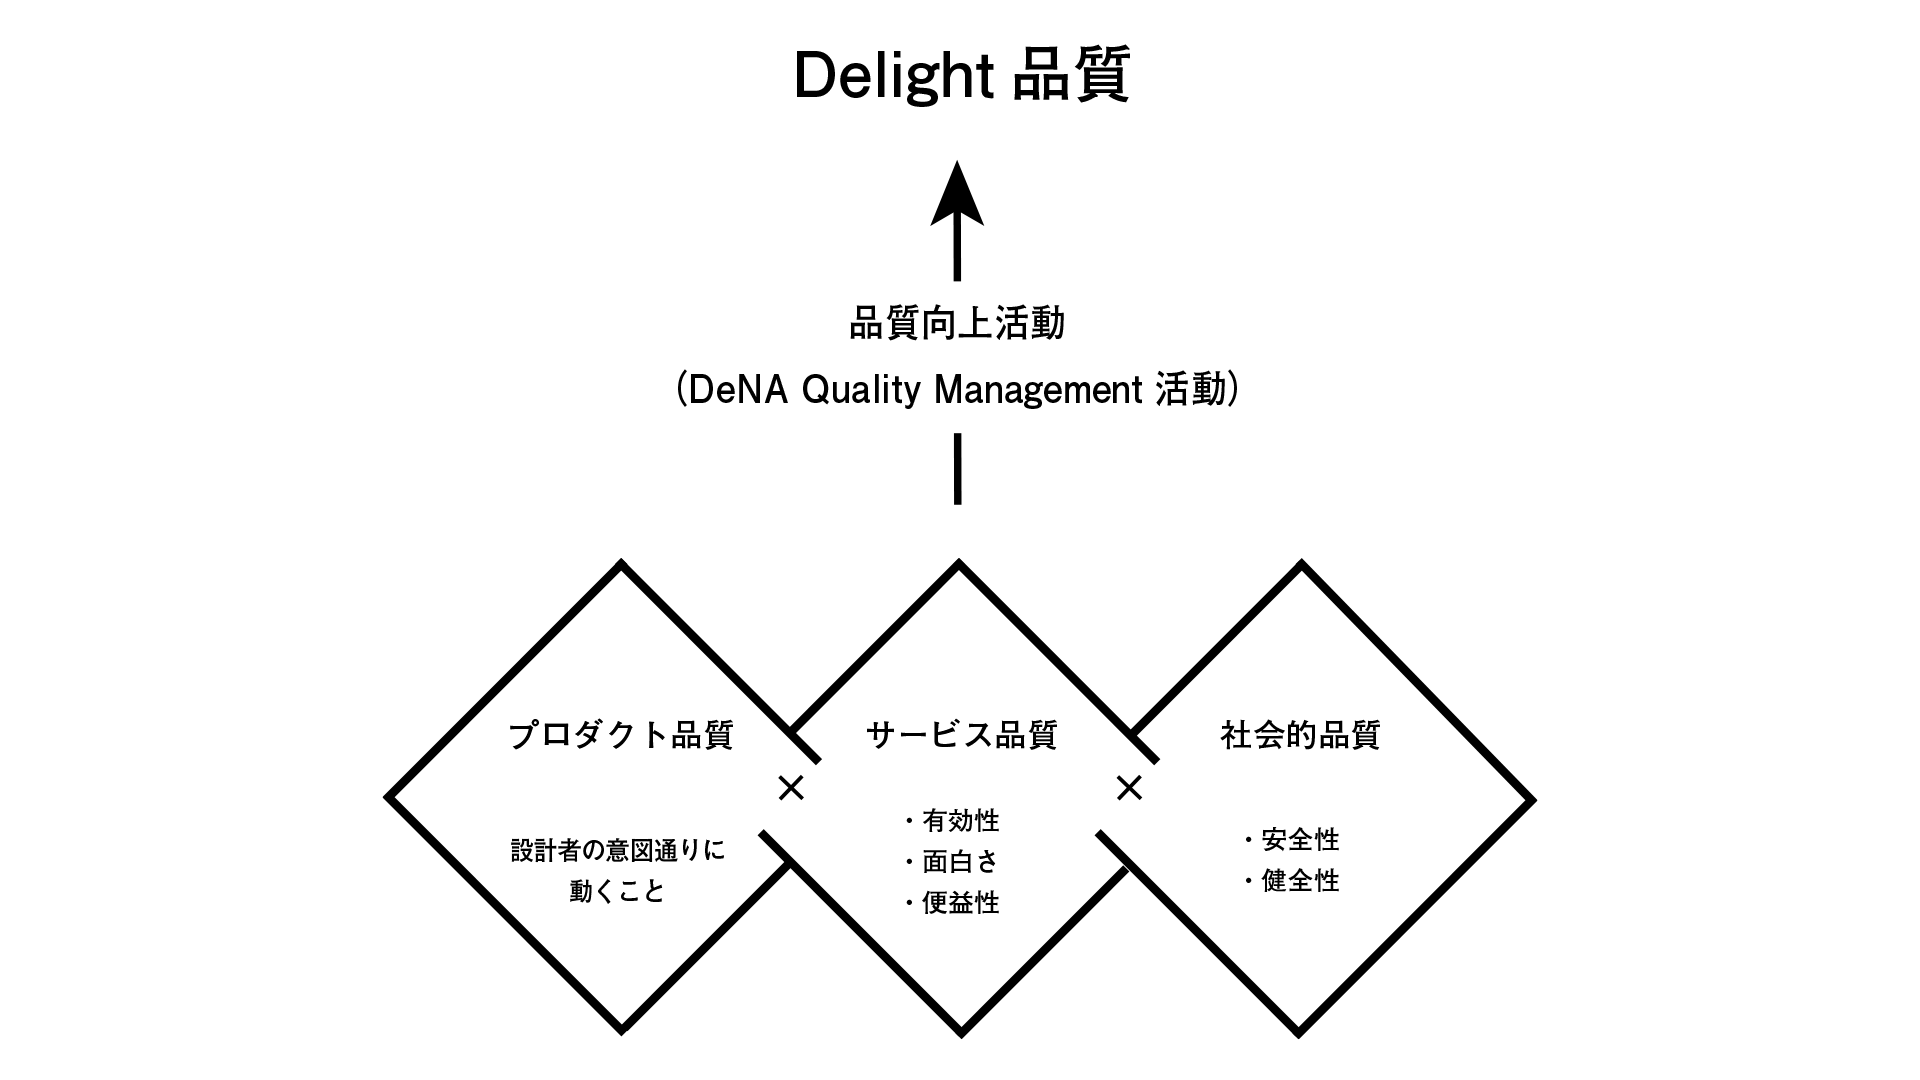 DQM活動によるDelight品質の実現